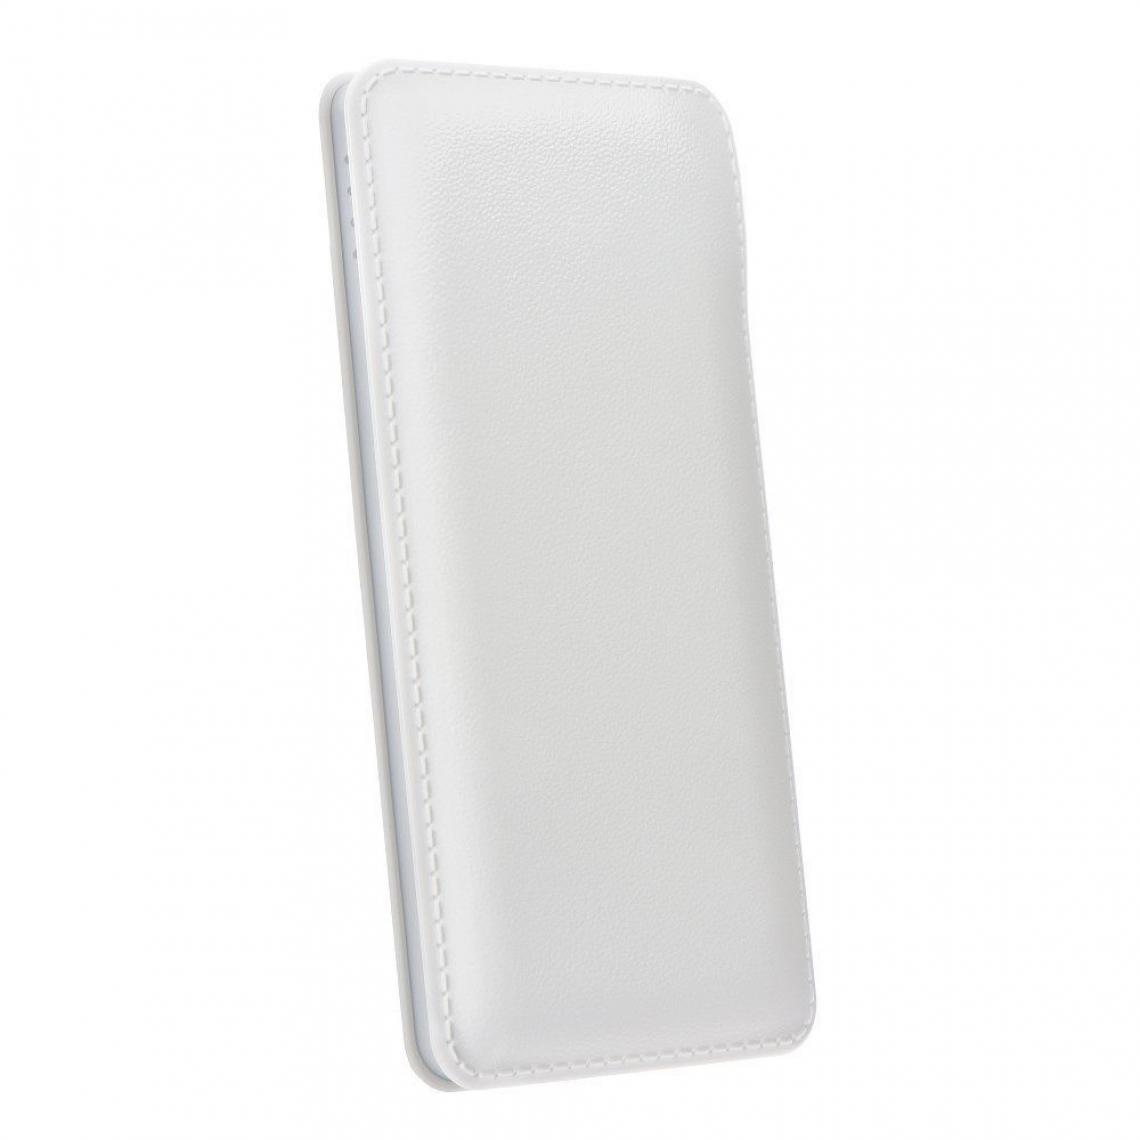 Ozzzo - Chargeur batterie externe 10000mAh powerbank ozzzo blanc pour Huawei Y5p - Autres accessoires smartphone